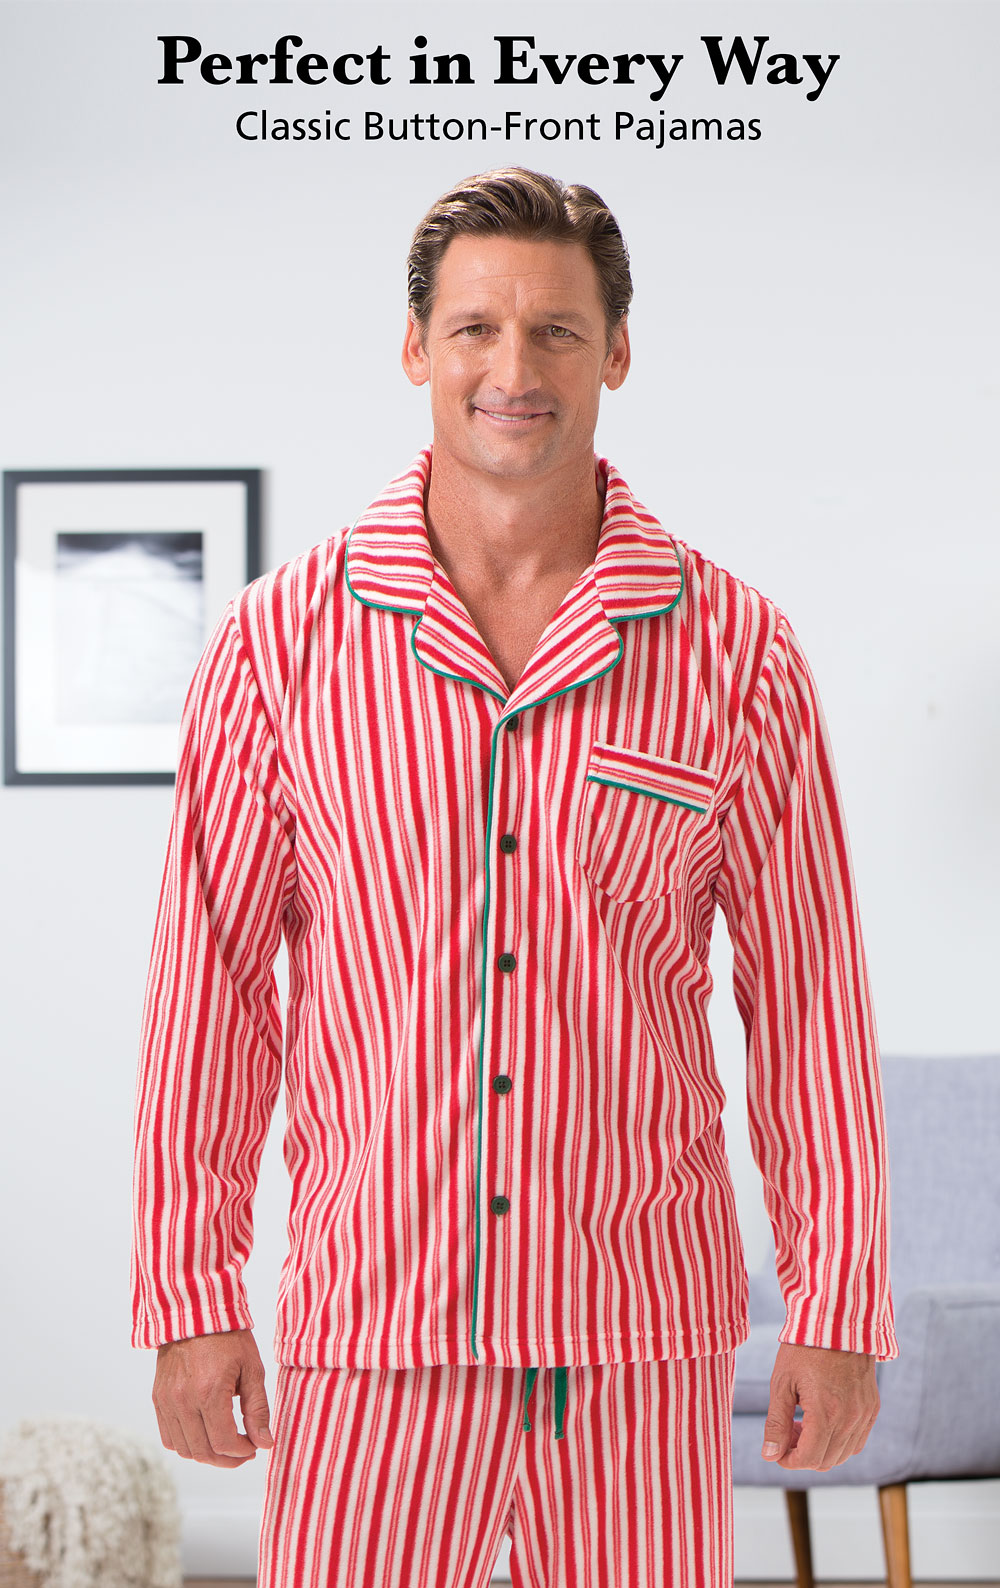 Candy Cane Fleece Men's Pajamas in Men's Fleece Pajamas | Pajamas for ...